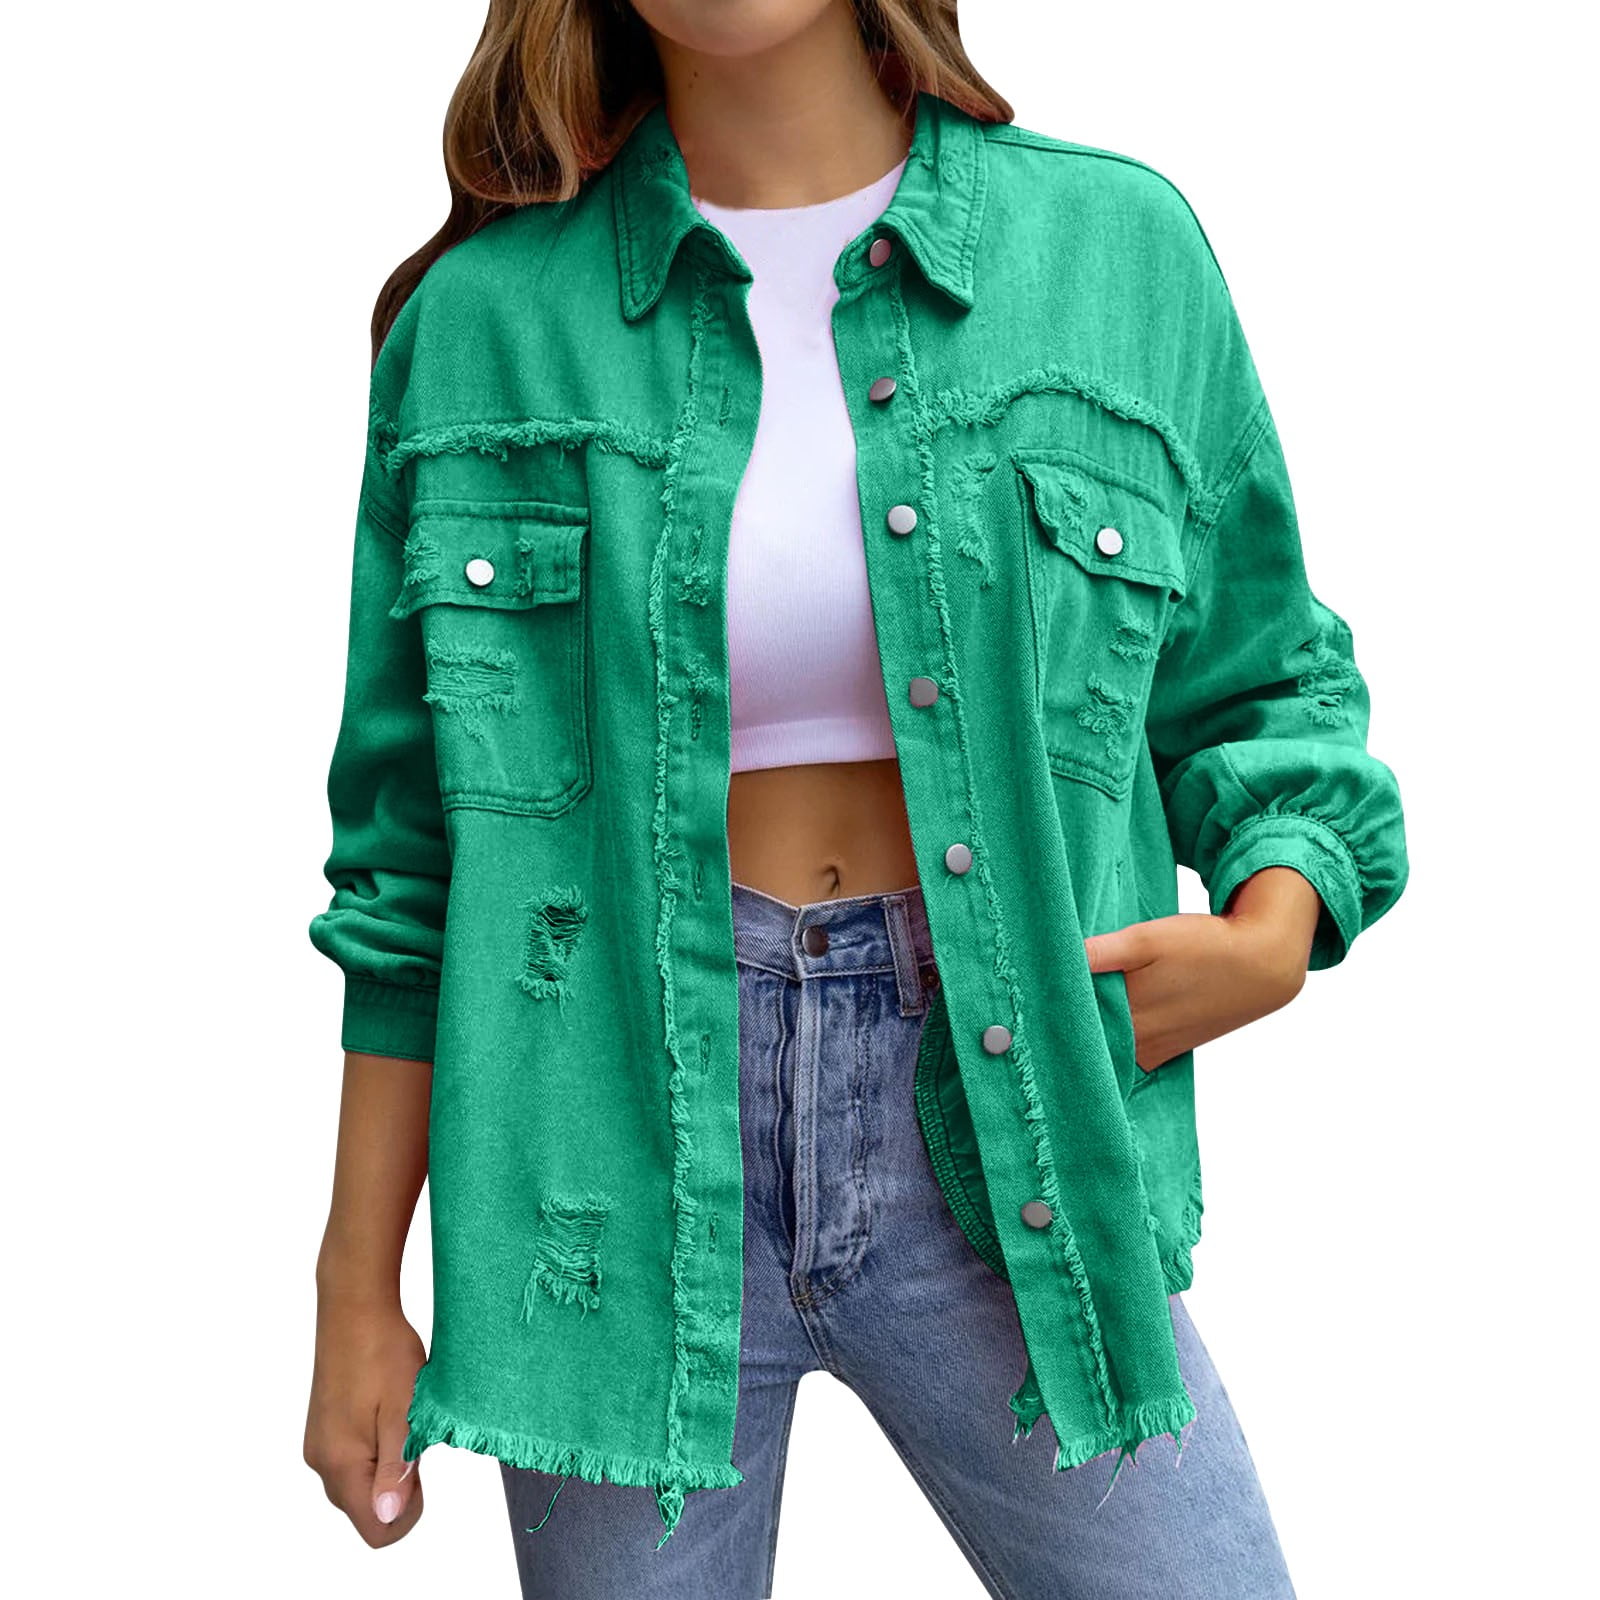 Sonoma | Jackets & Coats | Army Green Denim Jacket | Poshmark